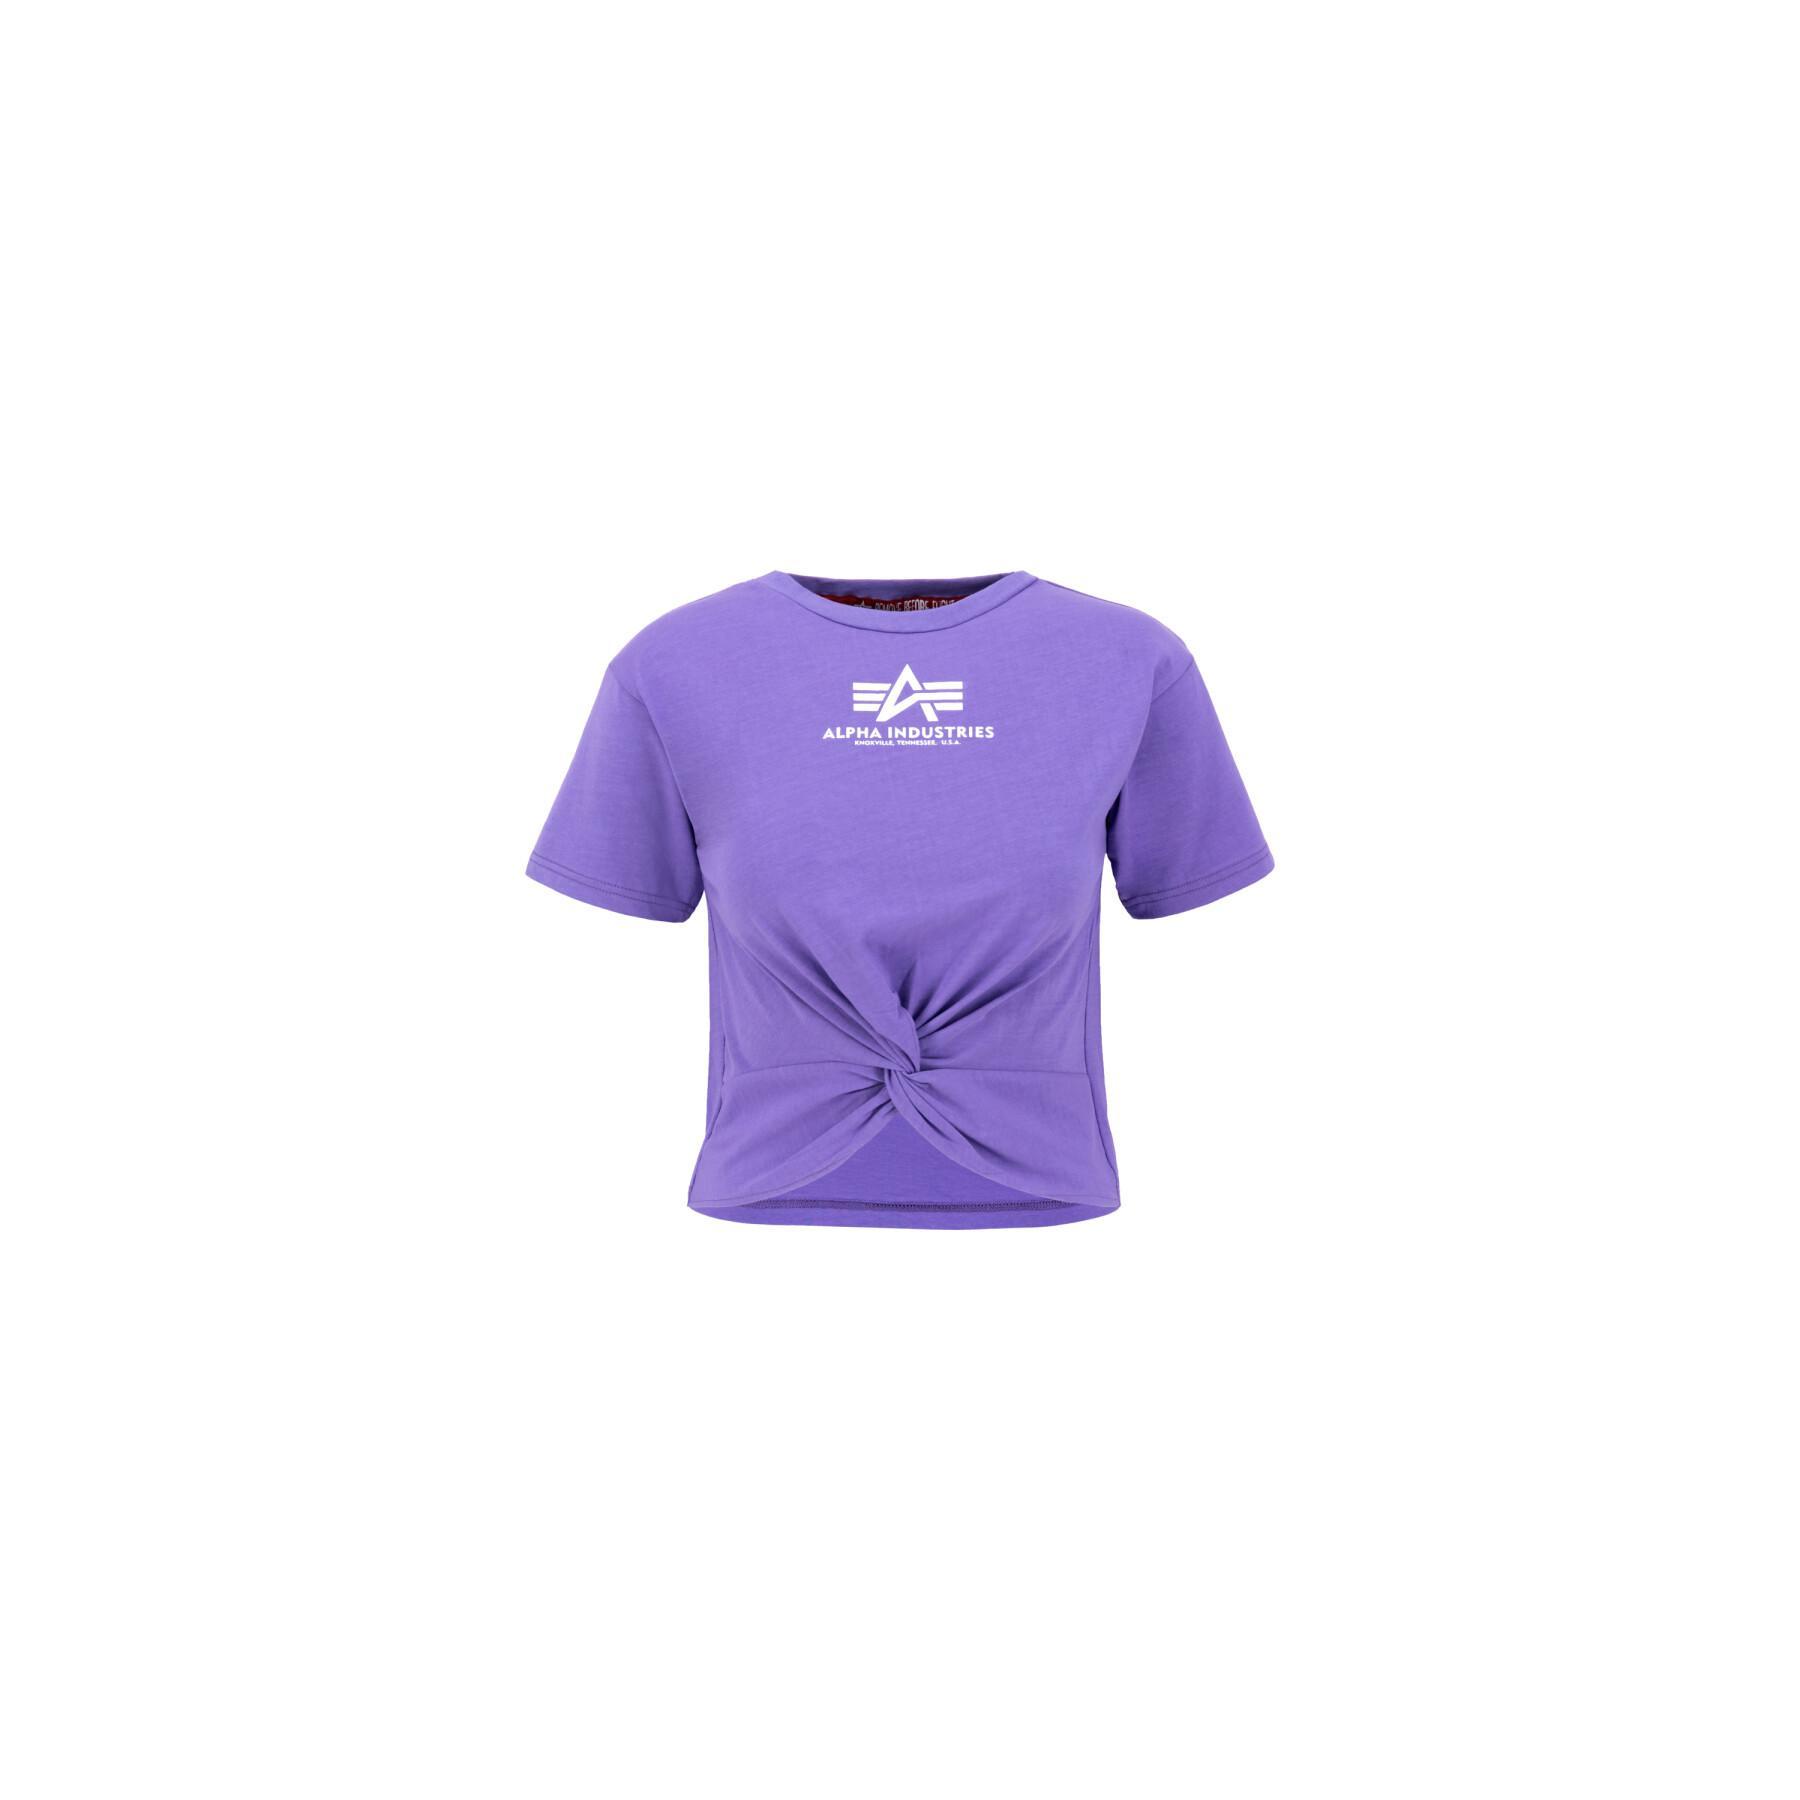 Dames-T-shirt met geknoopte mouwen Alpha Industries